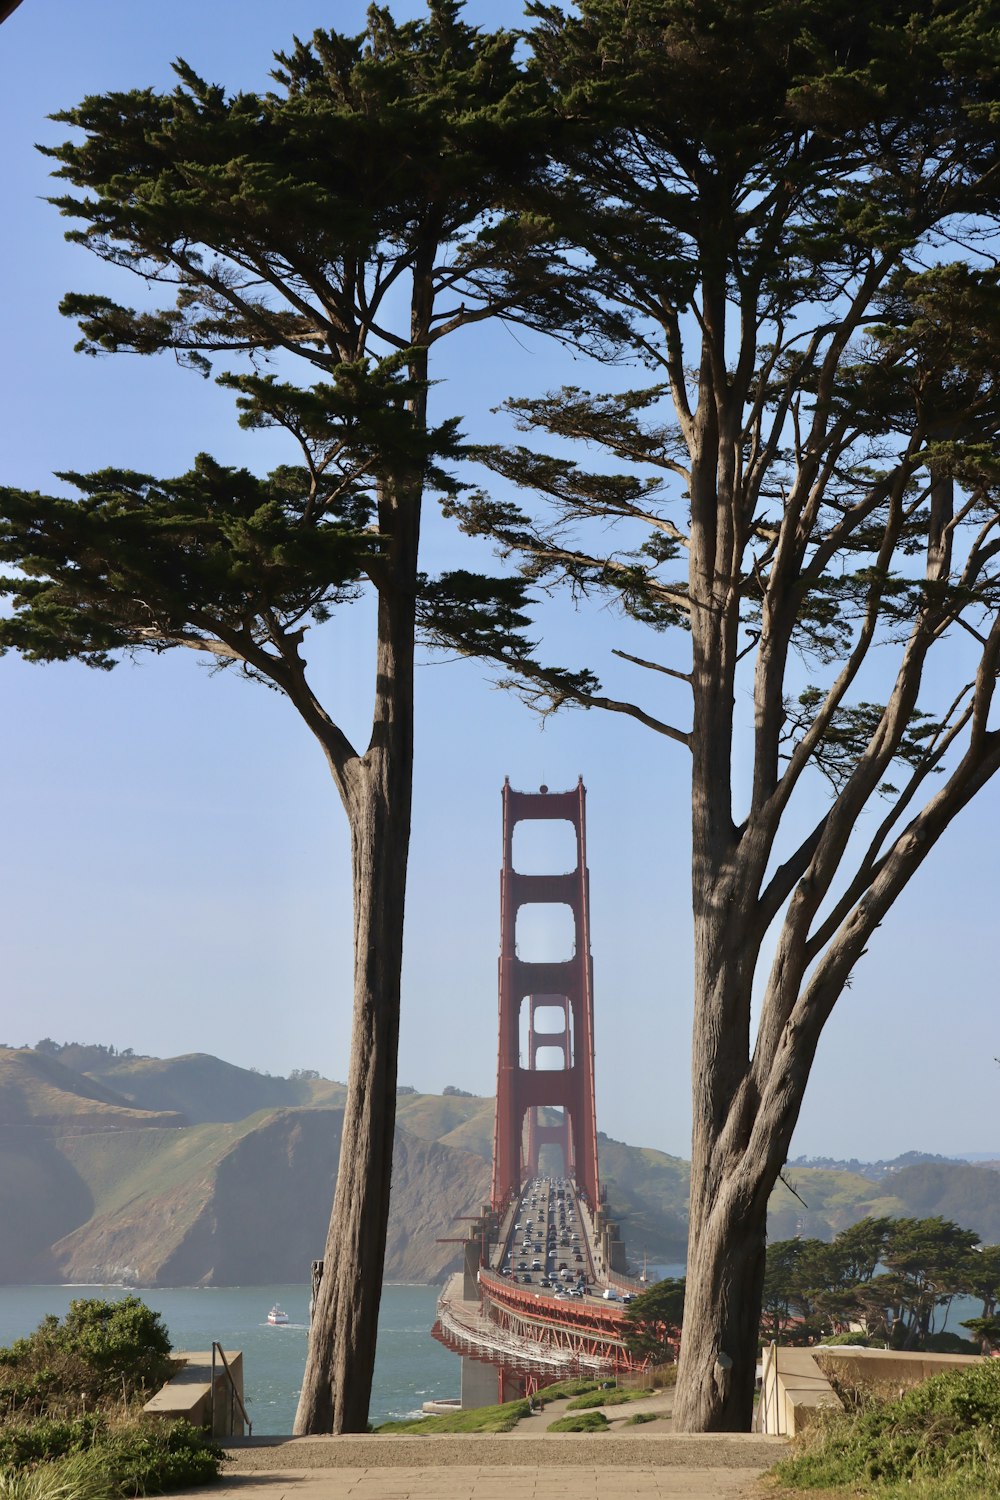 Una veduta del Golden Gate Bridge tra gli alberi